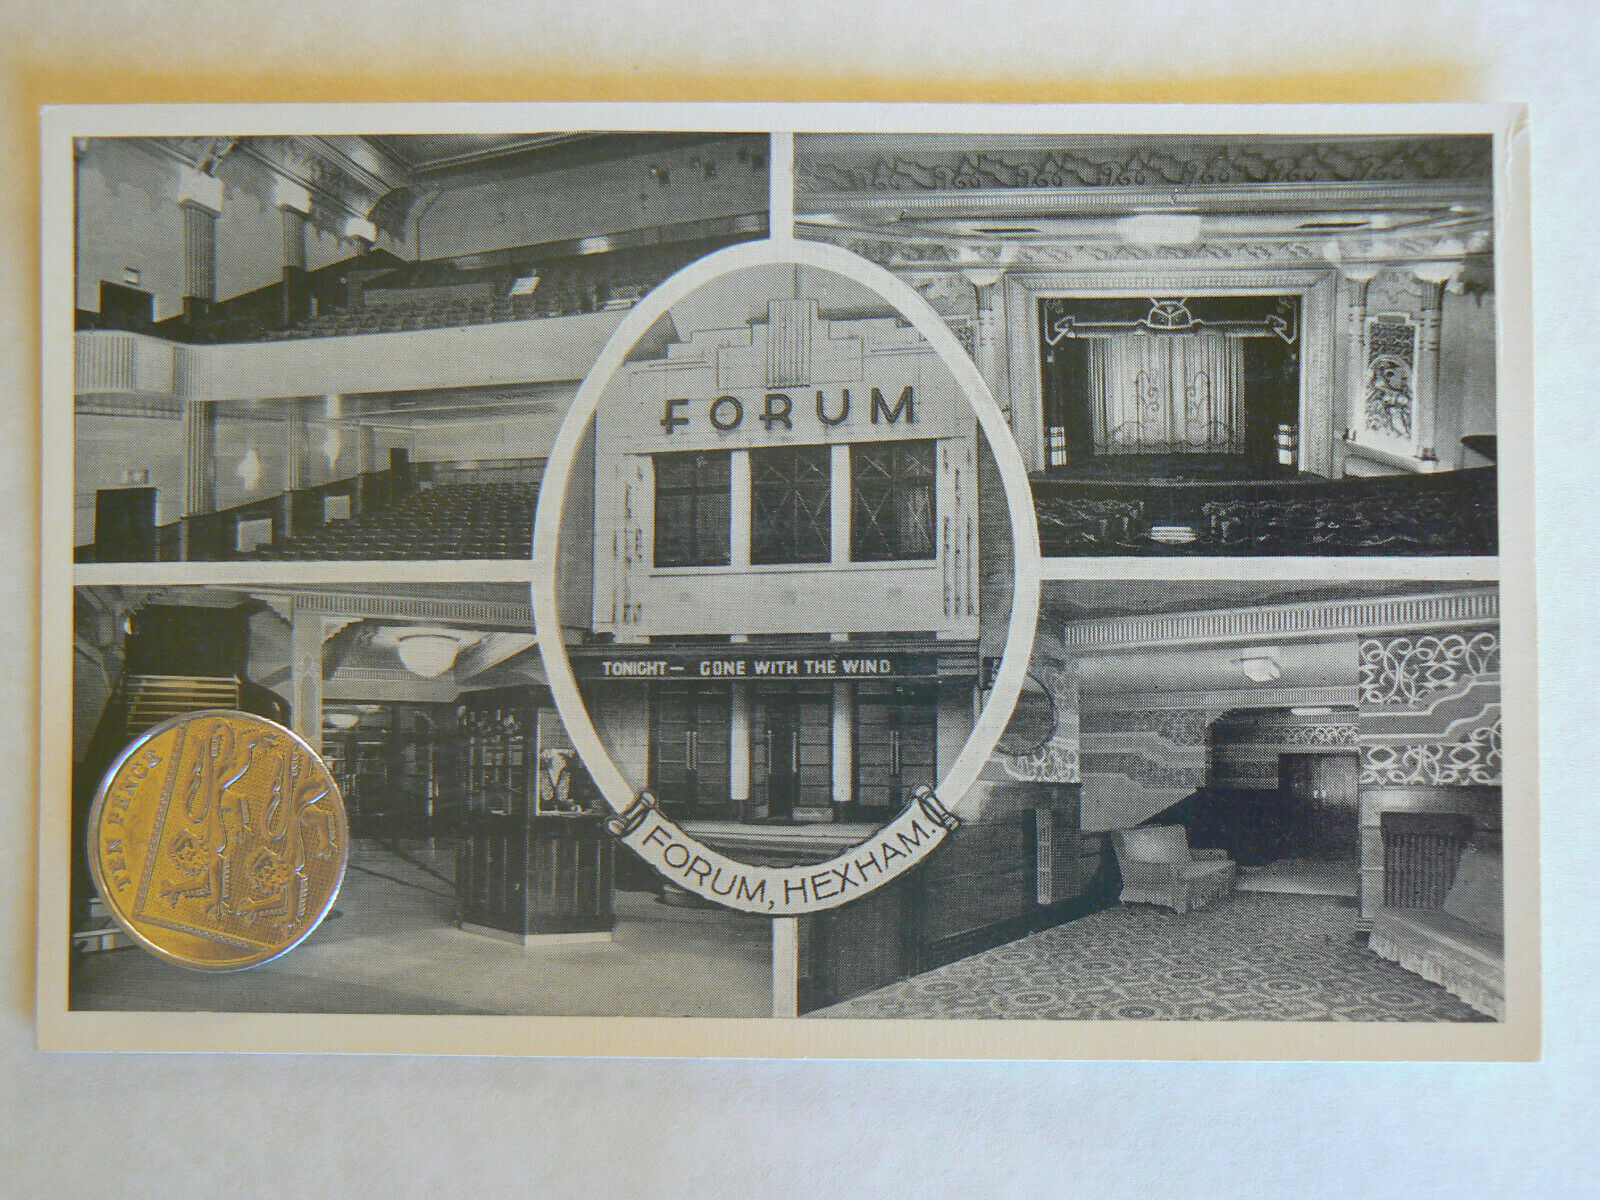 Vintage photographic service - Forum Cinema - Hexham - Art Deco 